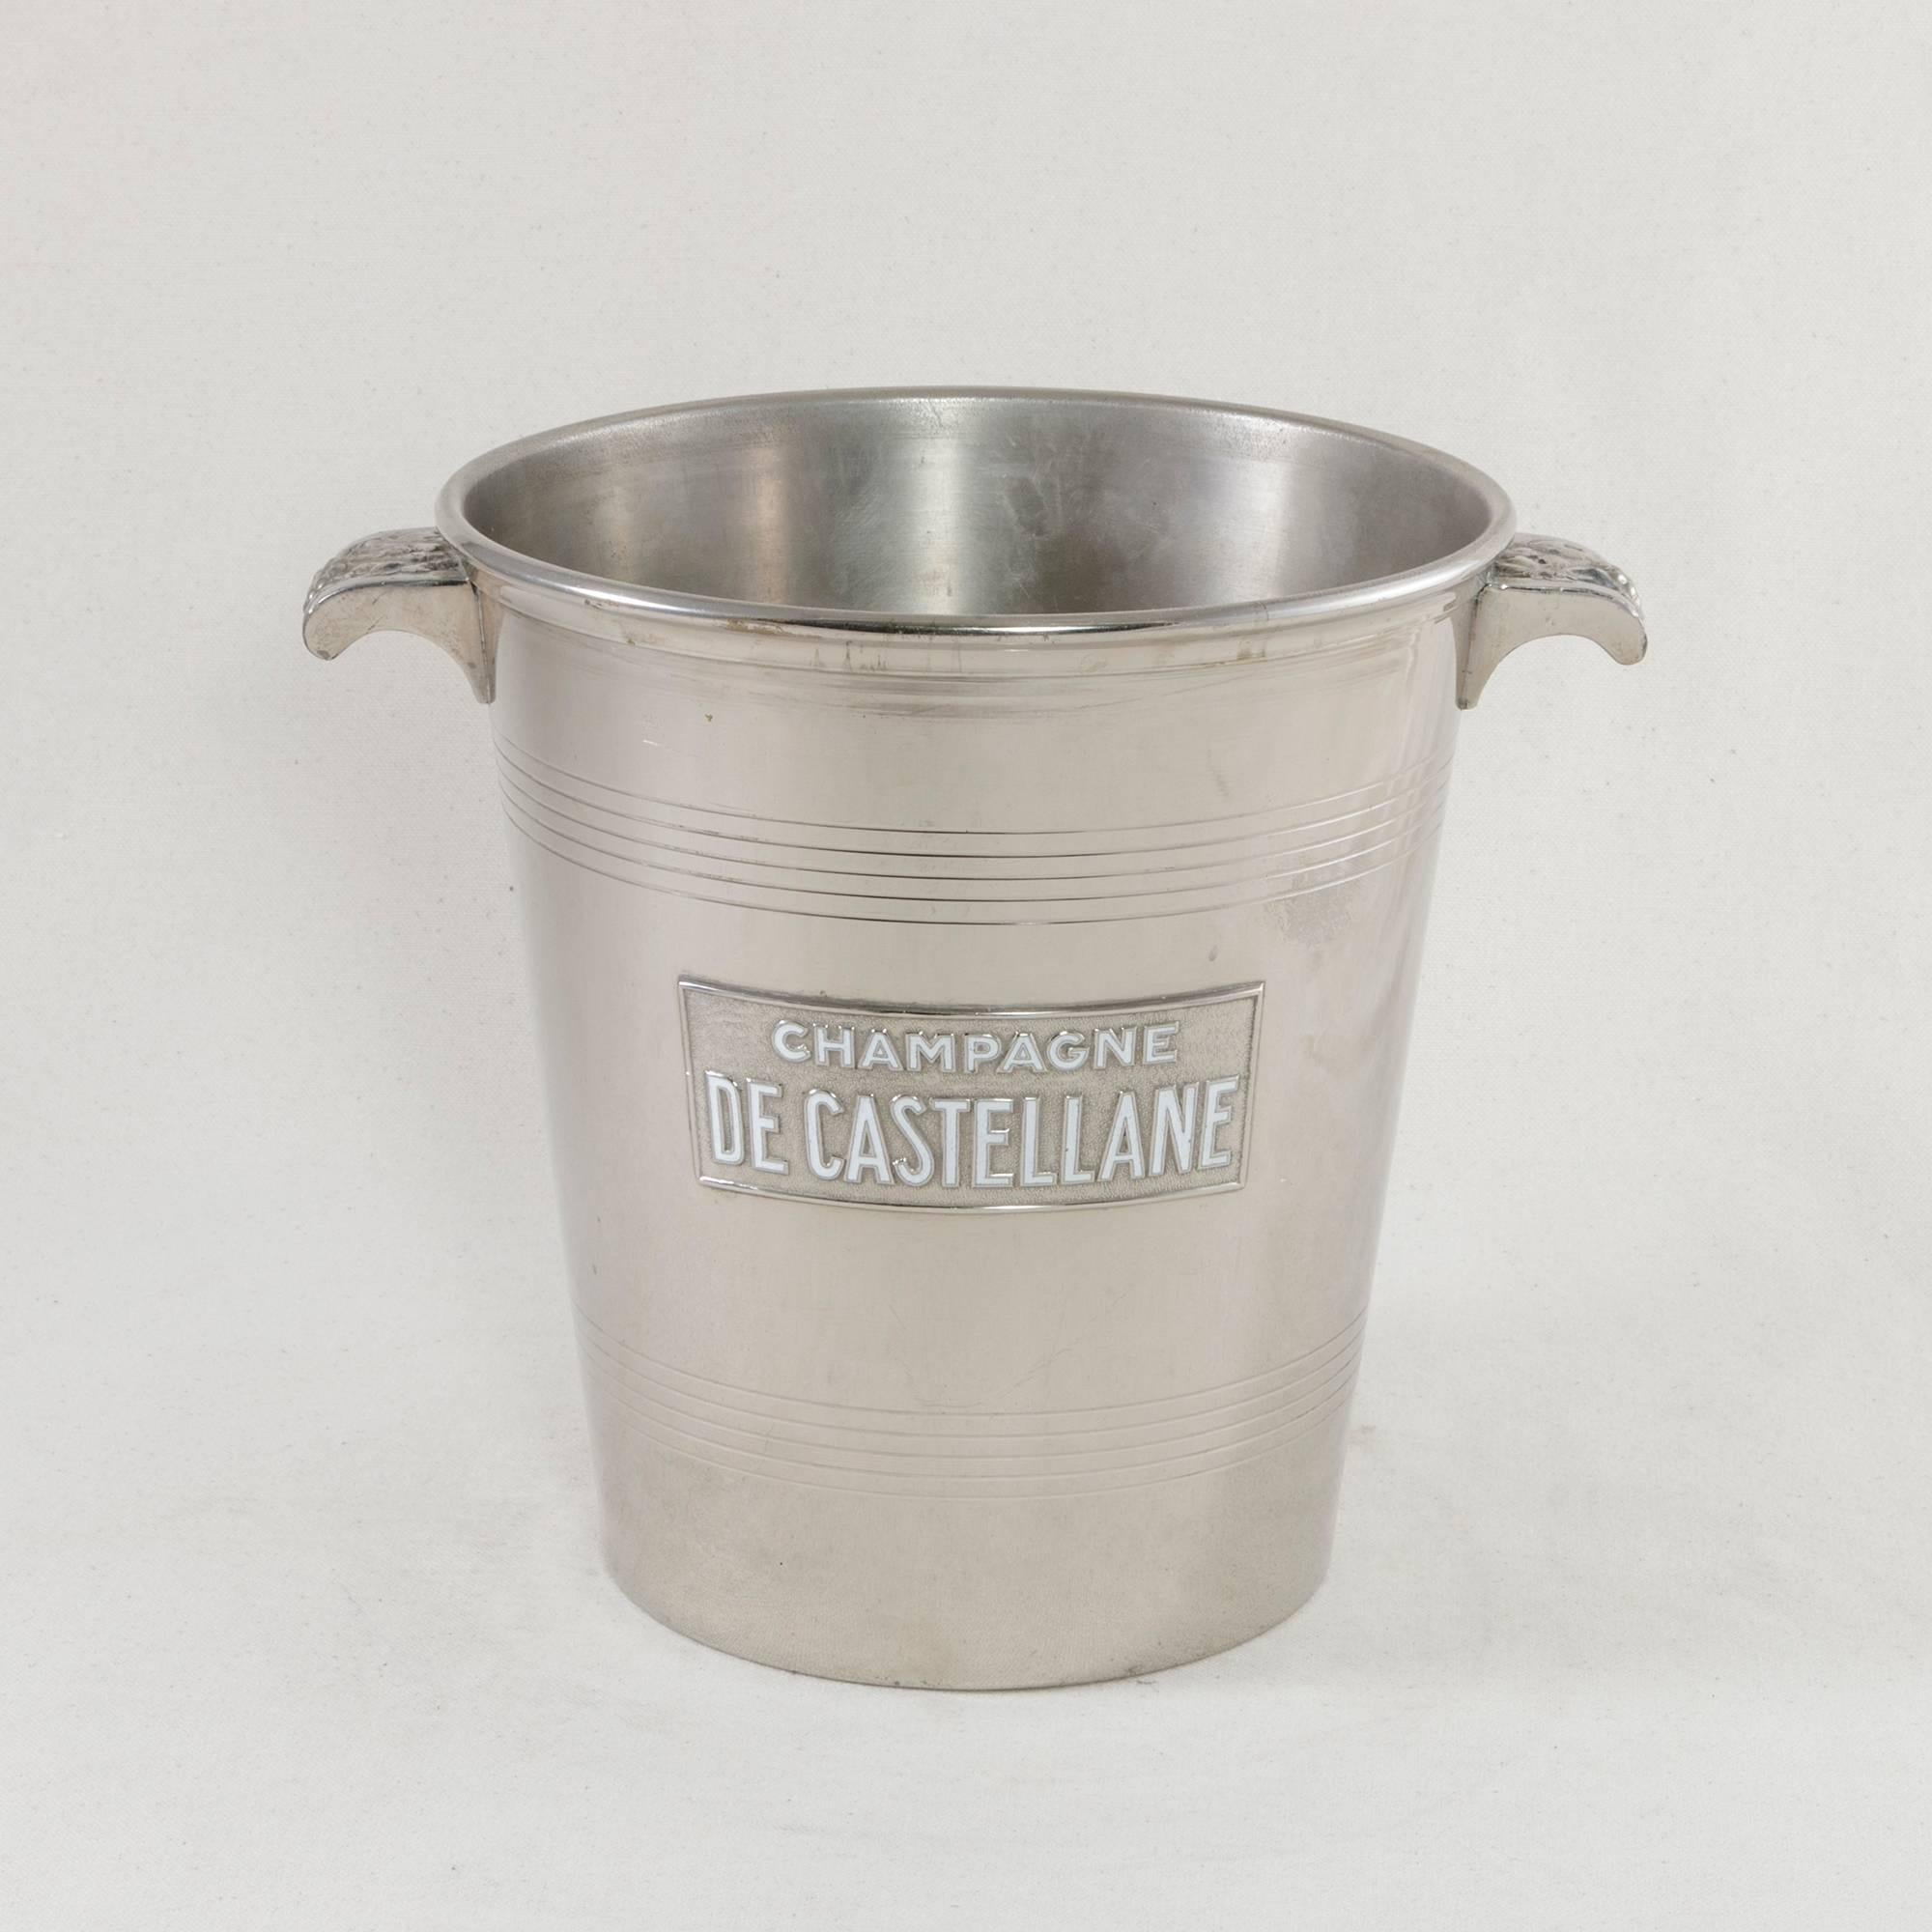 Art Deco Early 20th Century Silver Plate De Castellane Champagne Bucket, Enameled Letters